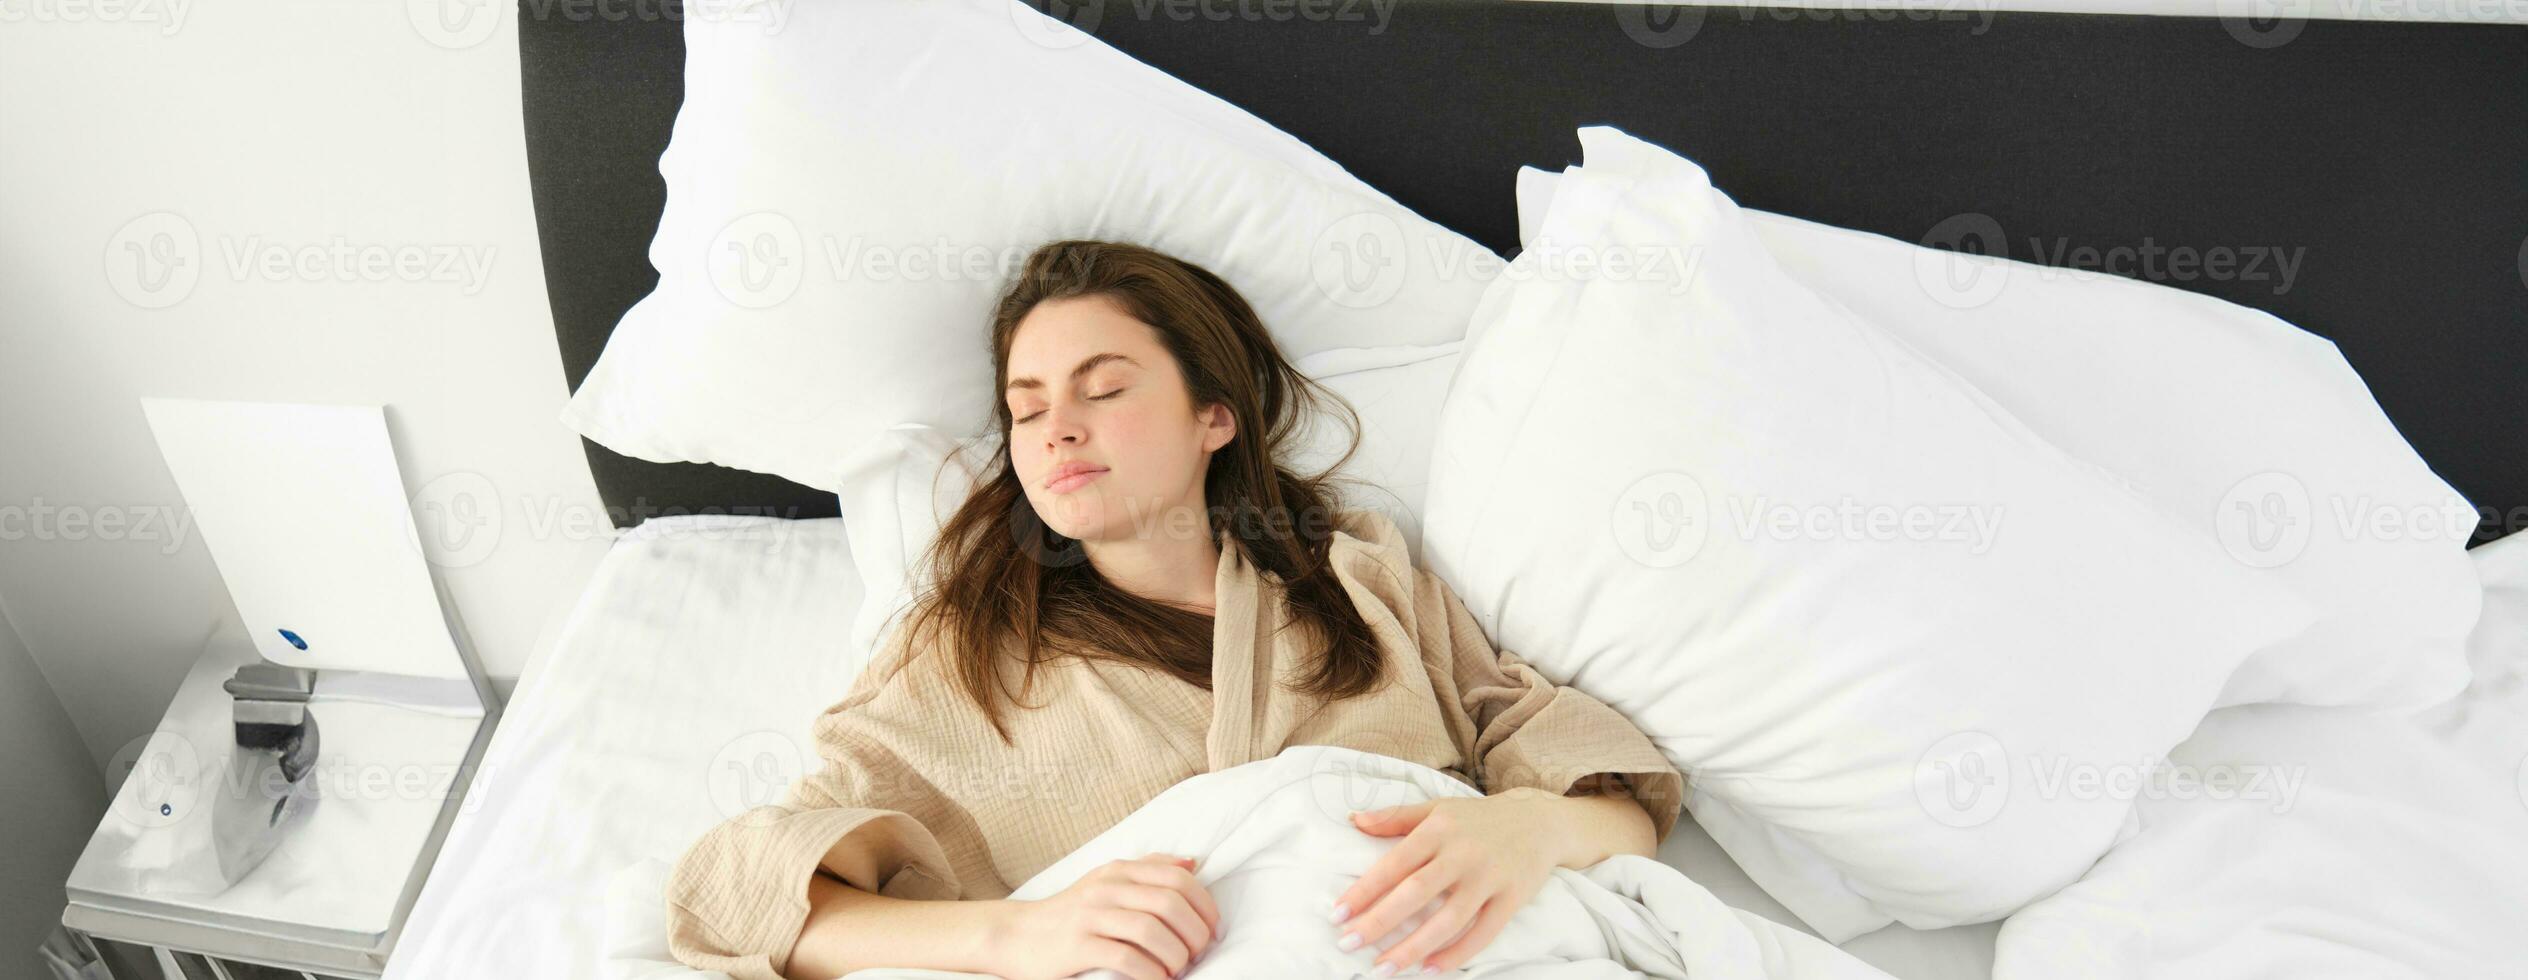 Haut vue de magnifique femme dans pyjamas dormant, repos dans lit avec fermé yeux, relaxant dans Hôtel pièce photo